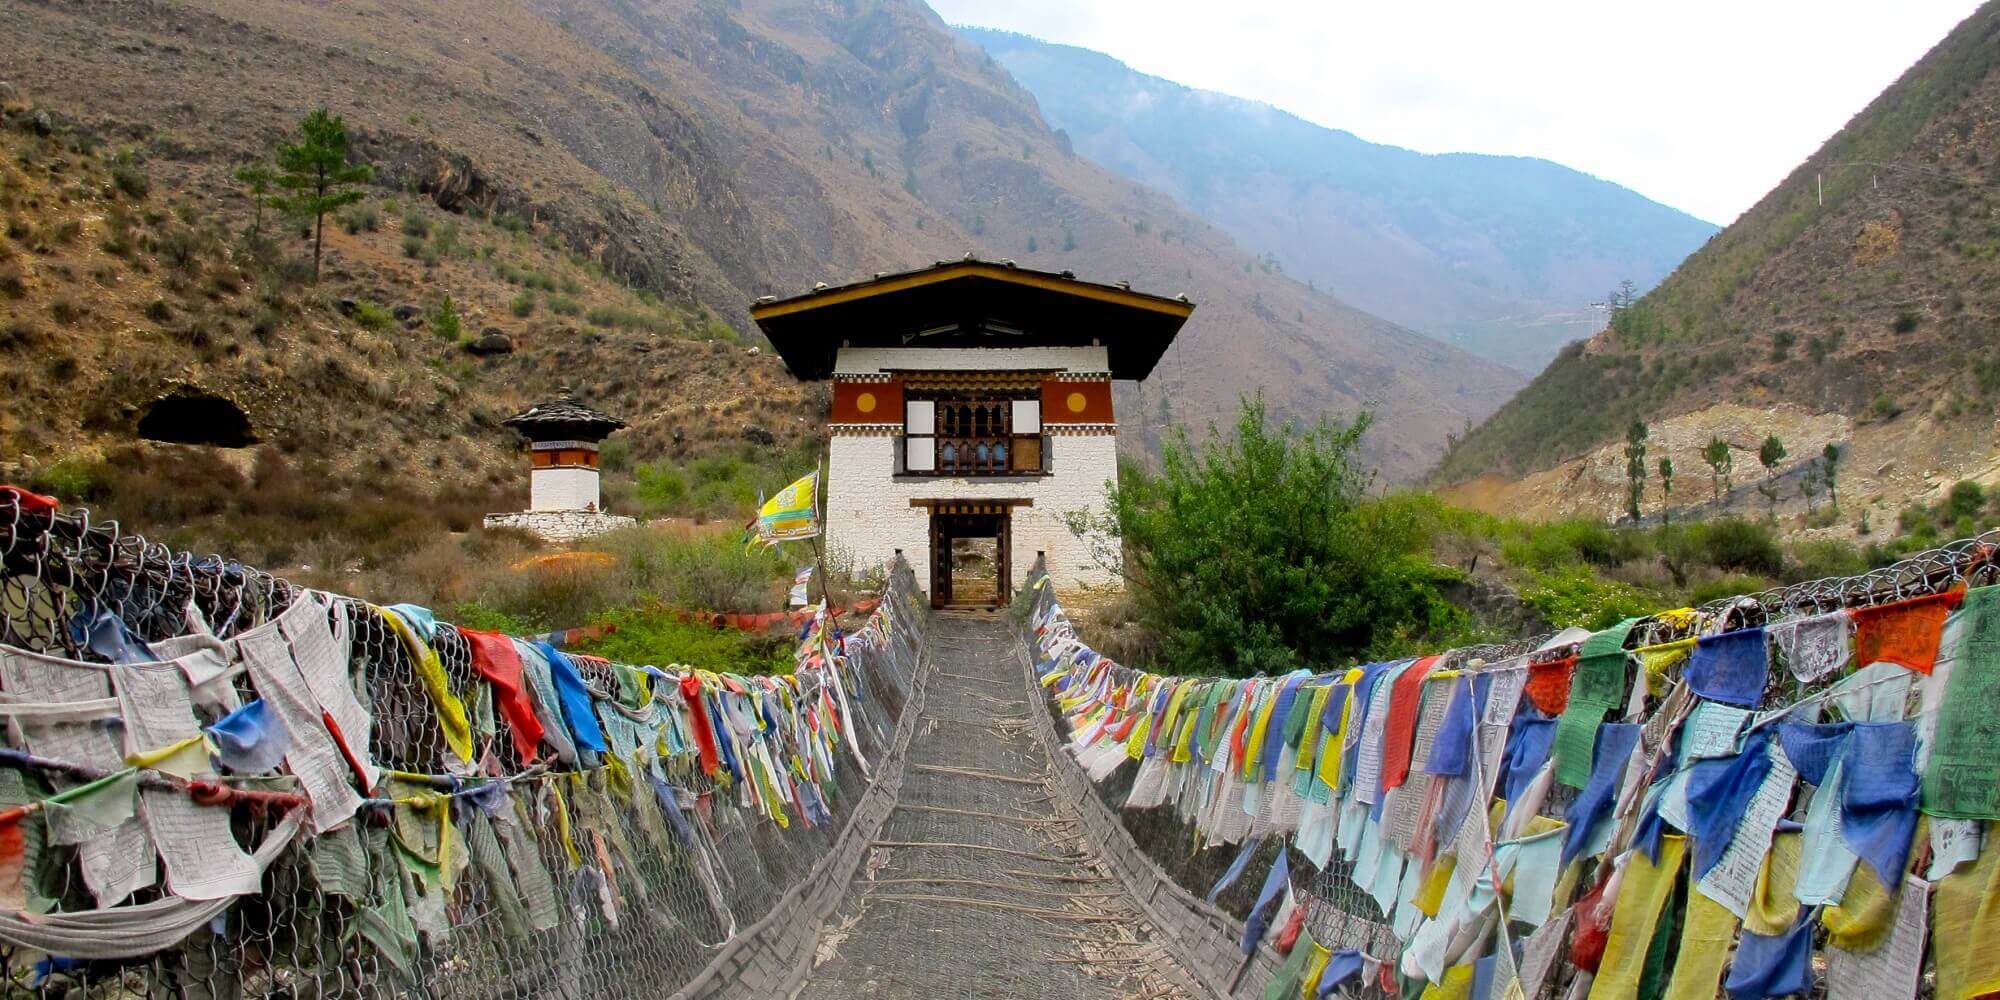 https://buddhatravel.co.nz/assets/uploads/package/2019-08-20-05-51-49-7-days-discover-bhutan-tour.jpg